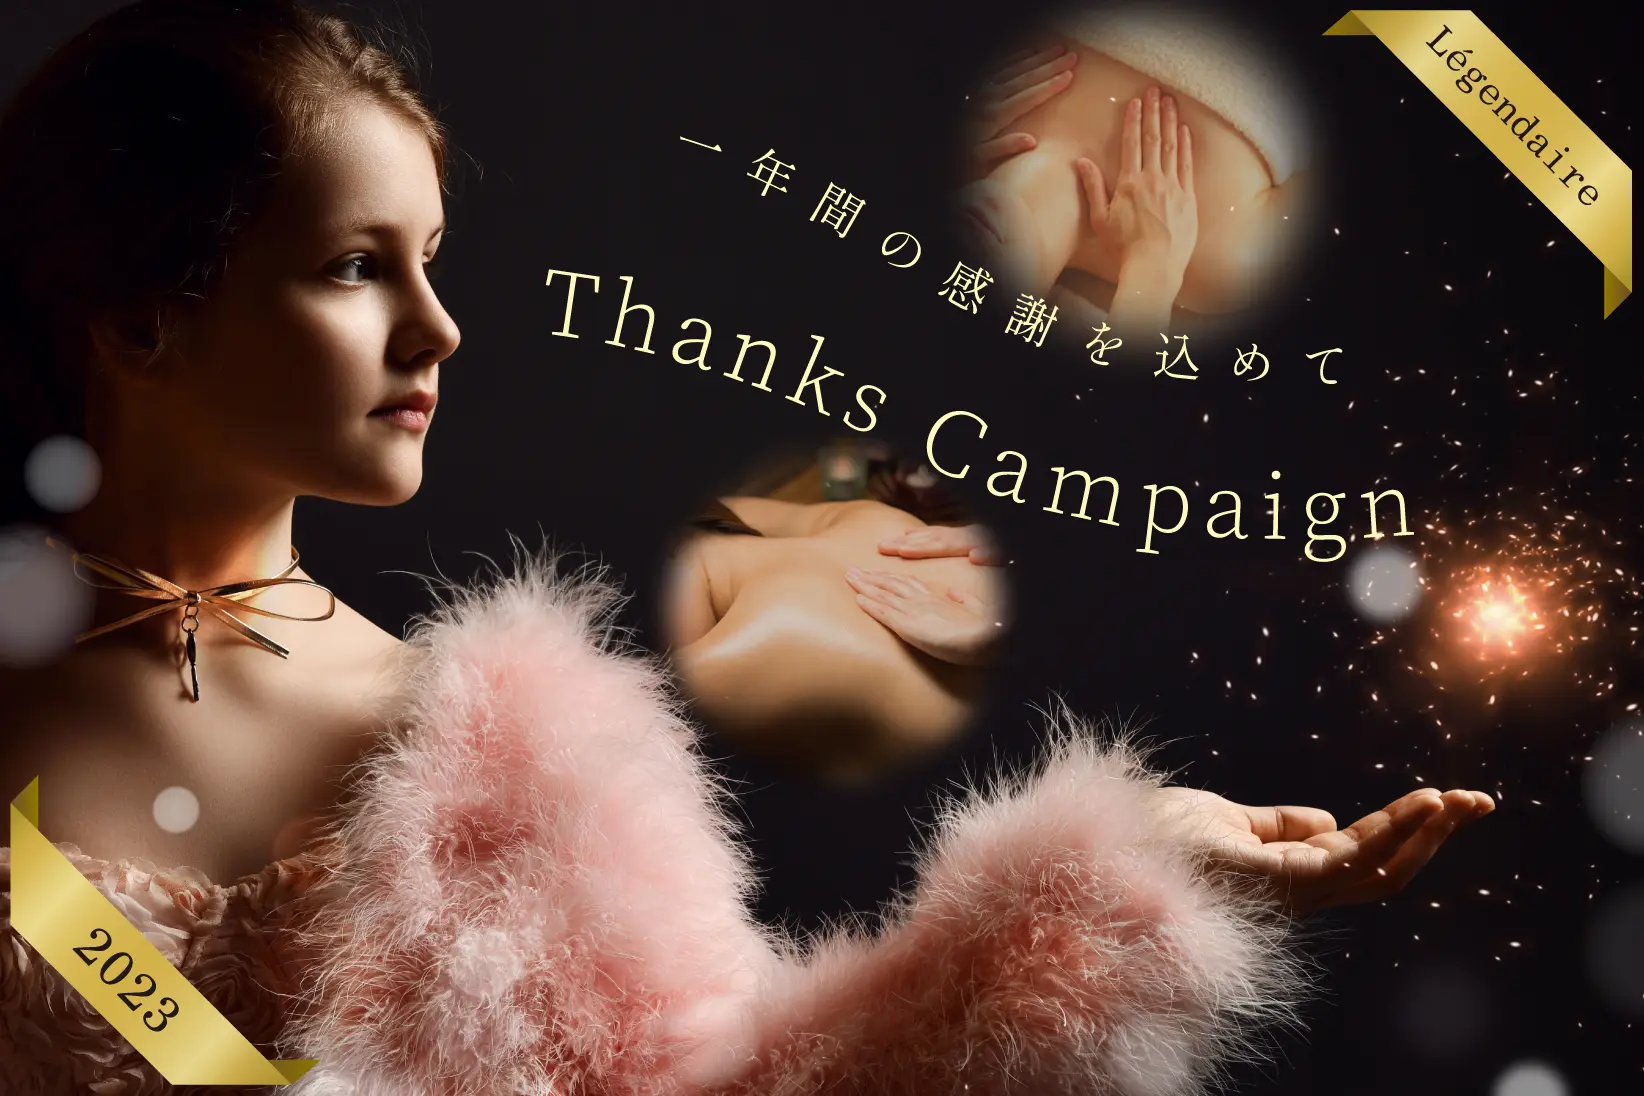 〜1年間の感謝をこめて〜Thanks Campaign